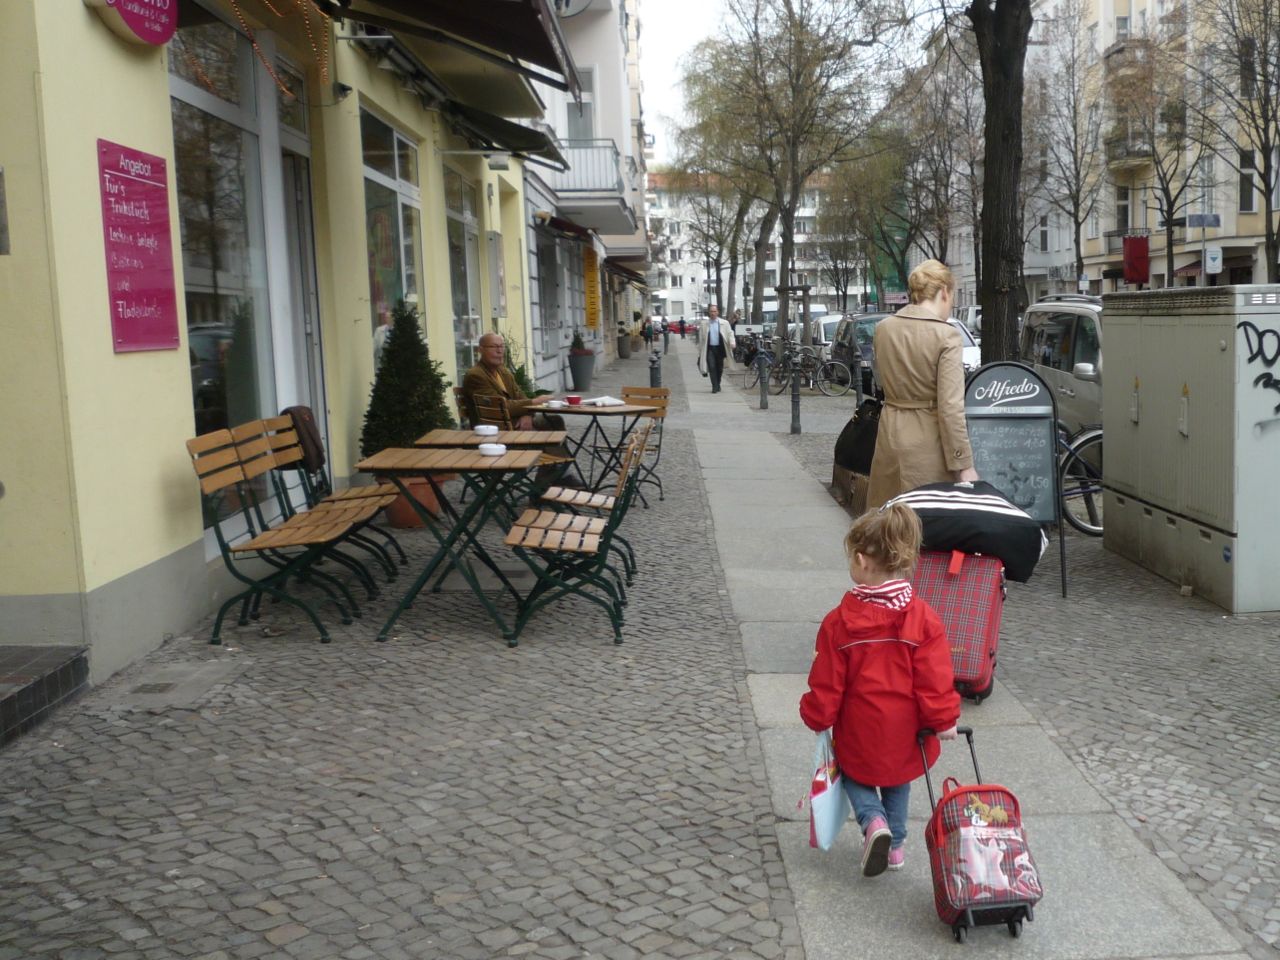 Berlin er en af meget børnevenlig - så tag bare børnene med på storbyferie. 